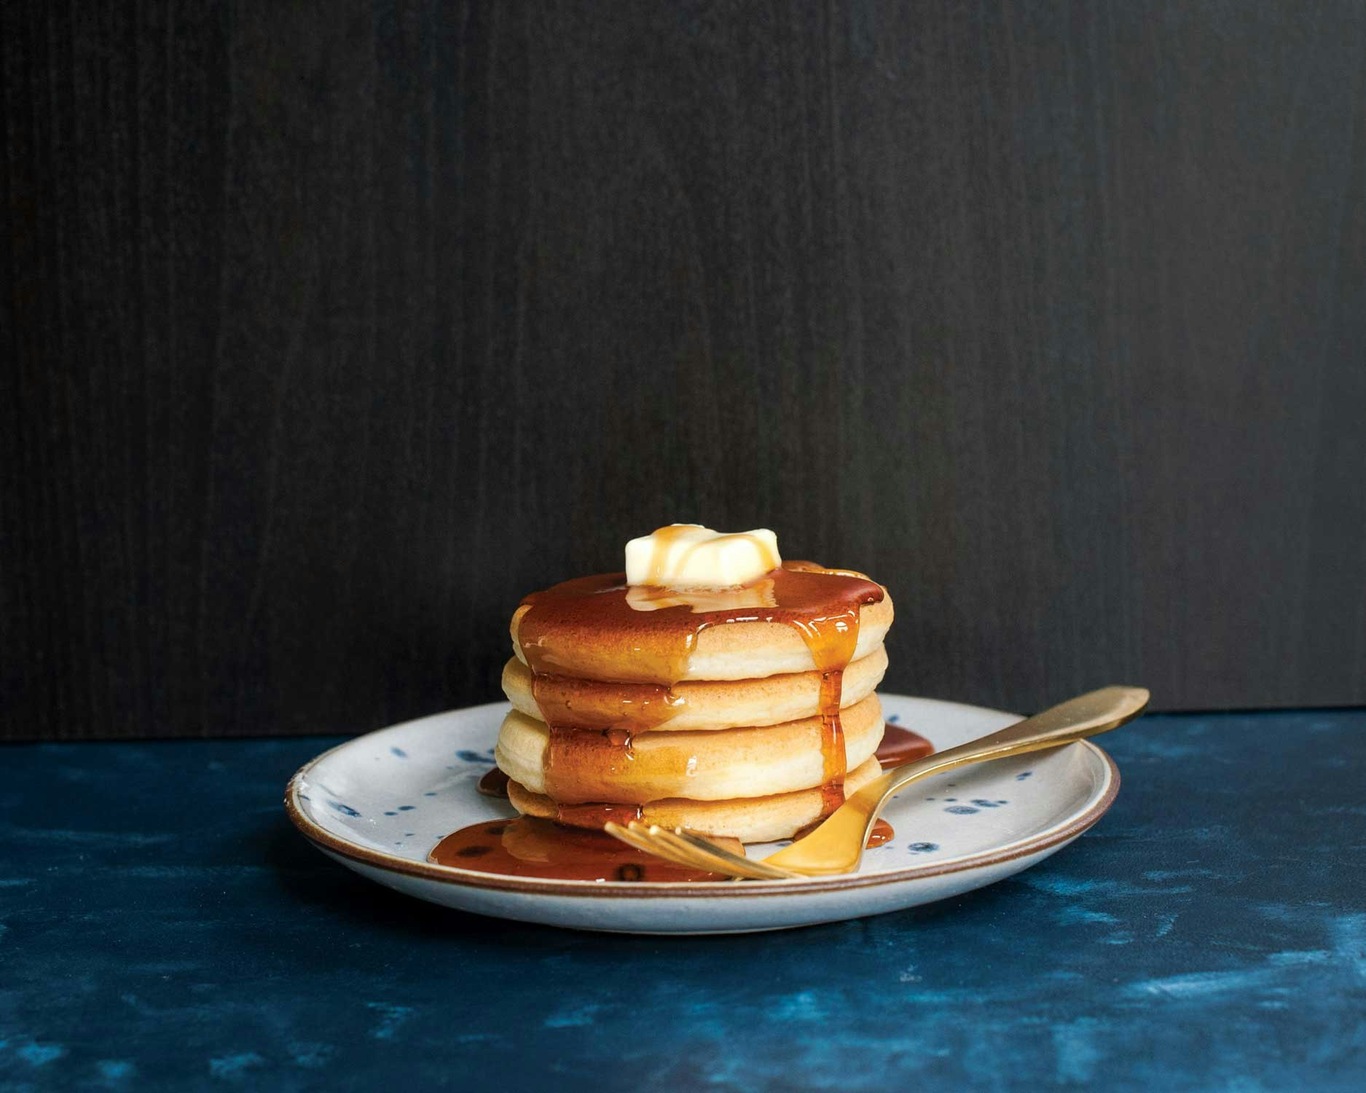 https://royaldesign.com/image/2/nordic-ware-silver-dollar-pancake-pan-1?w=800&quality=80